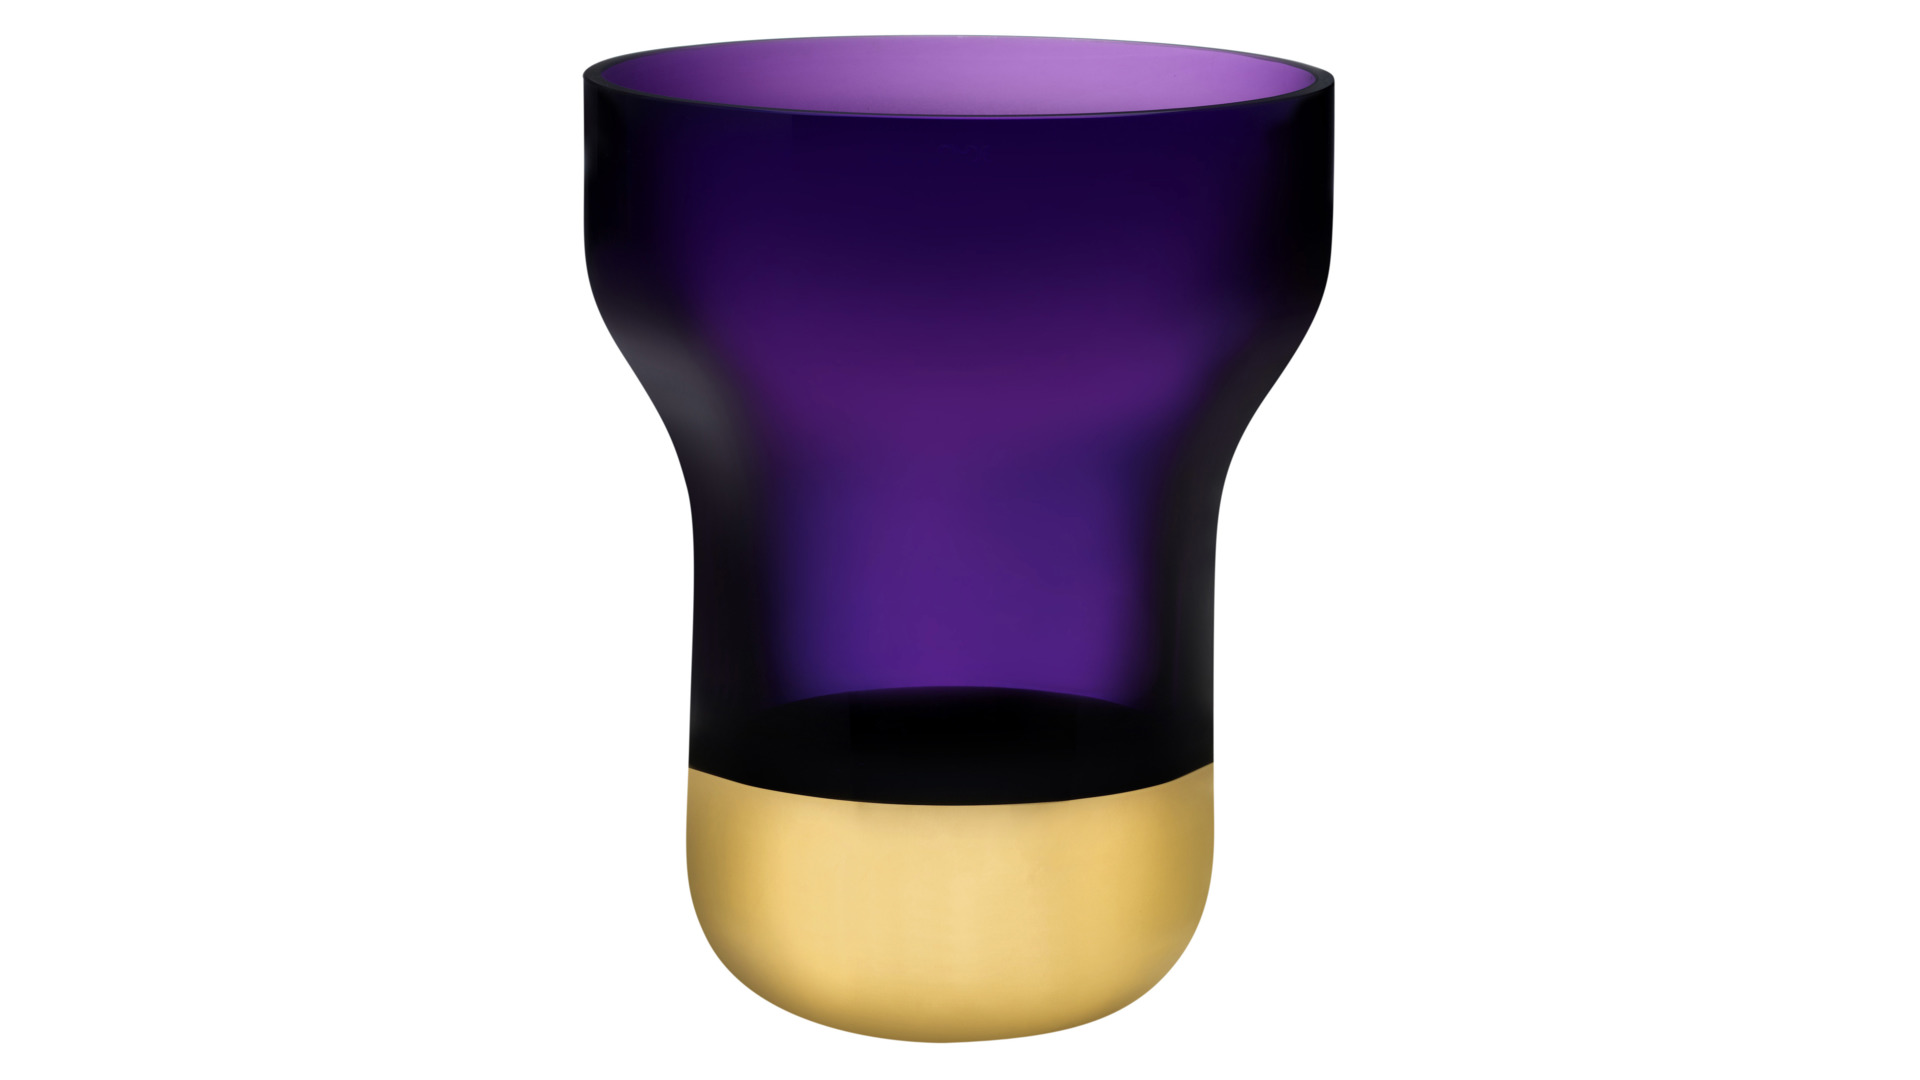 Ваза Nude Glass Контур 25 см, фиолетовая с золотым дном, хрусталь